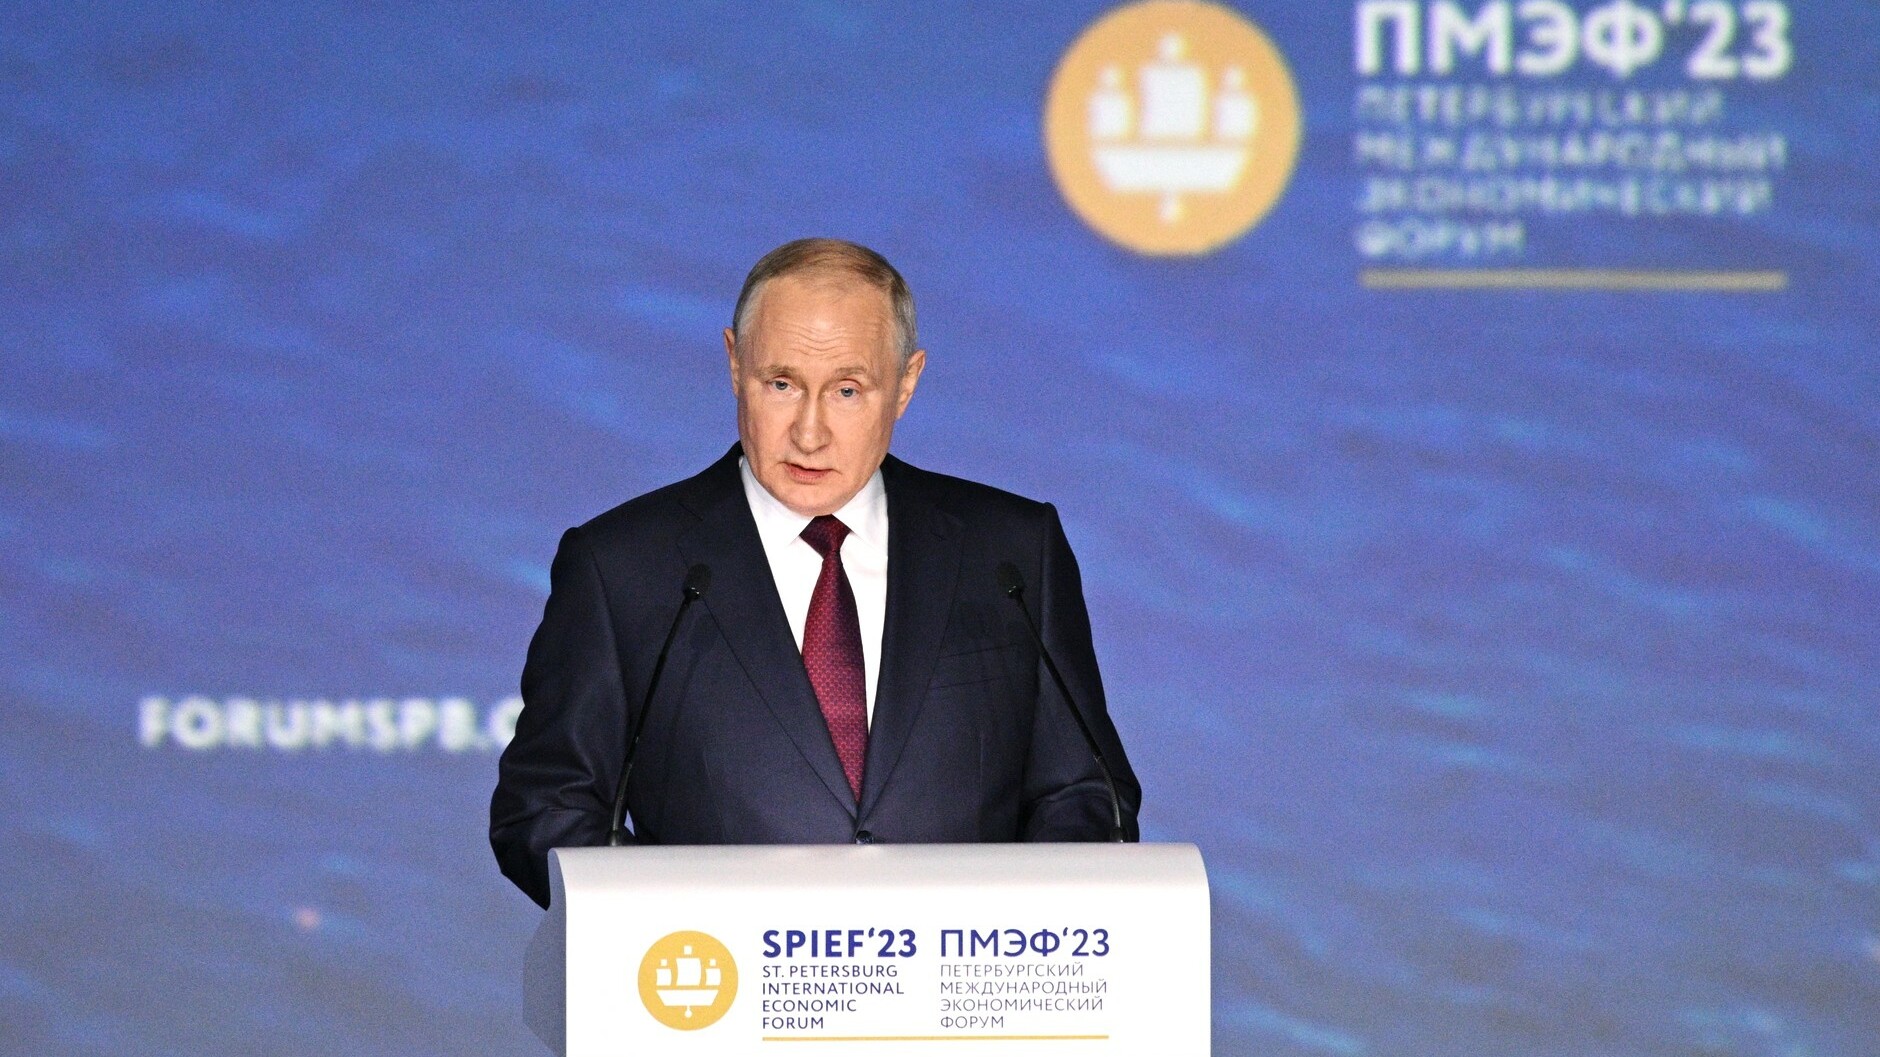 Уровень доверия россиян президенту РФ превысил 78%